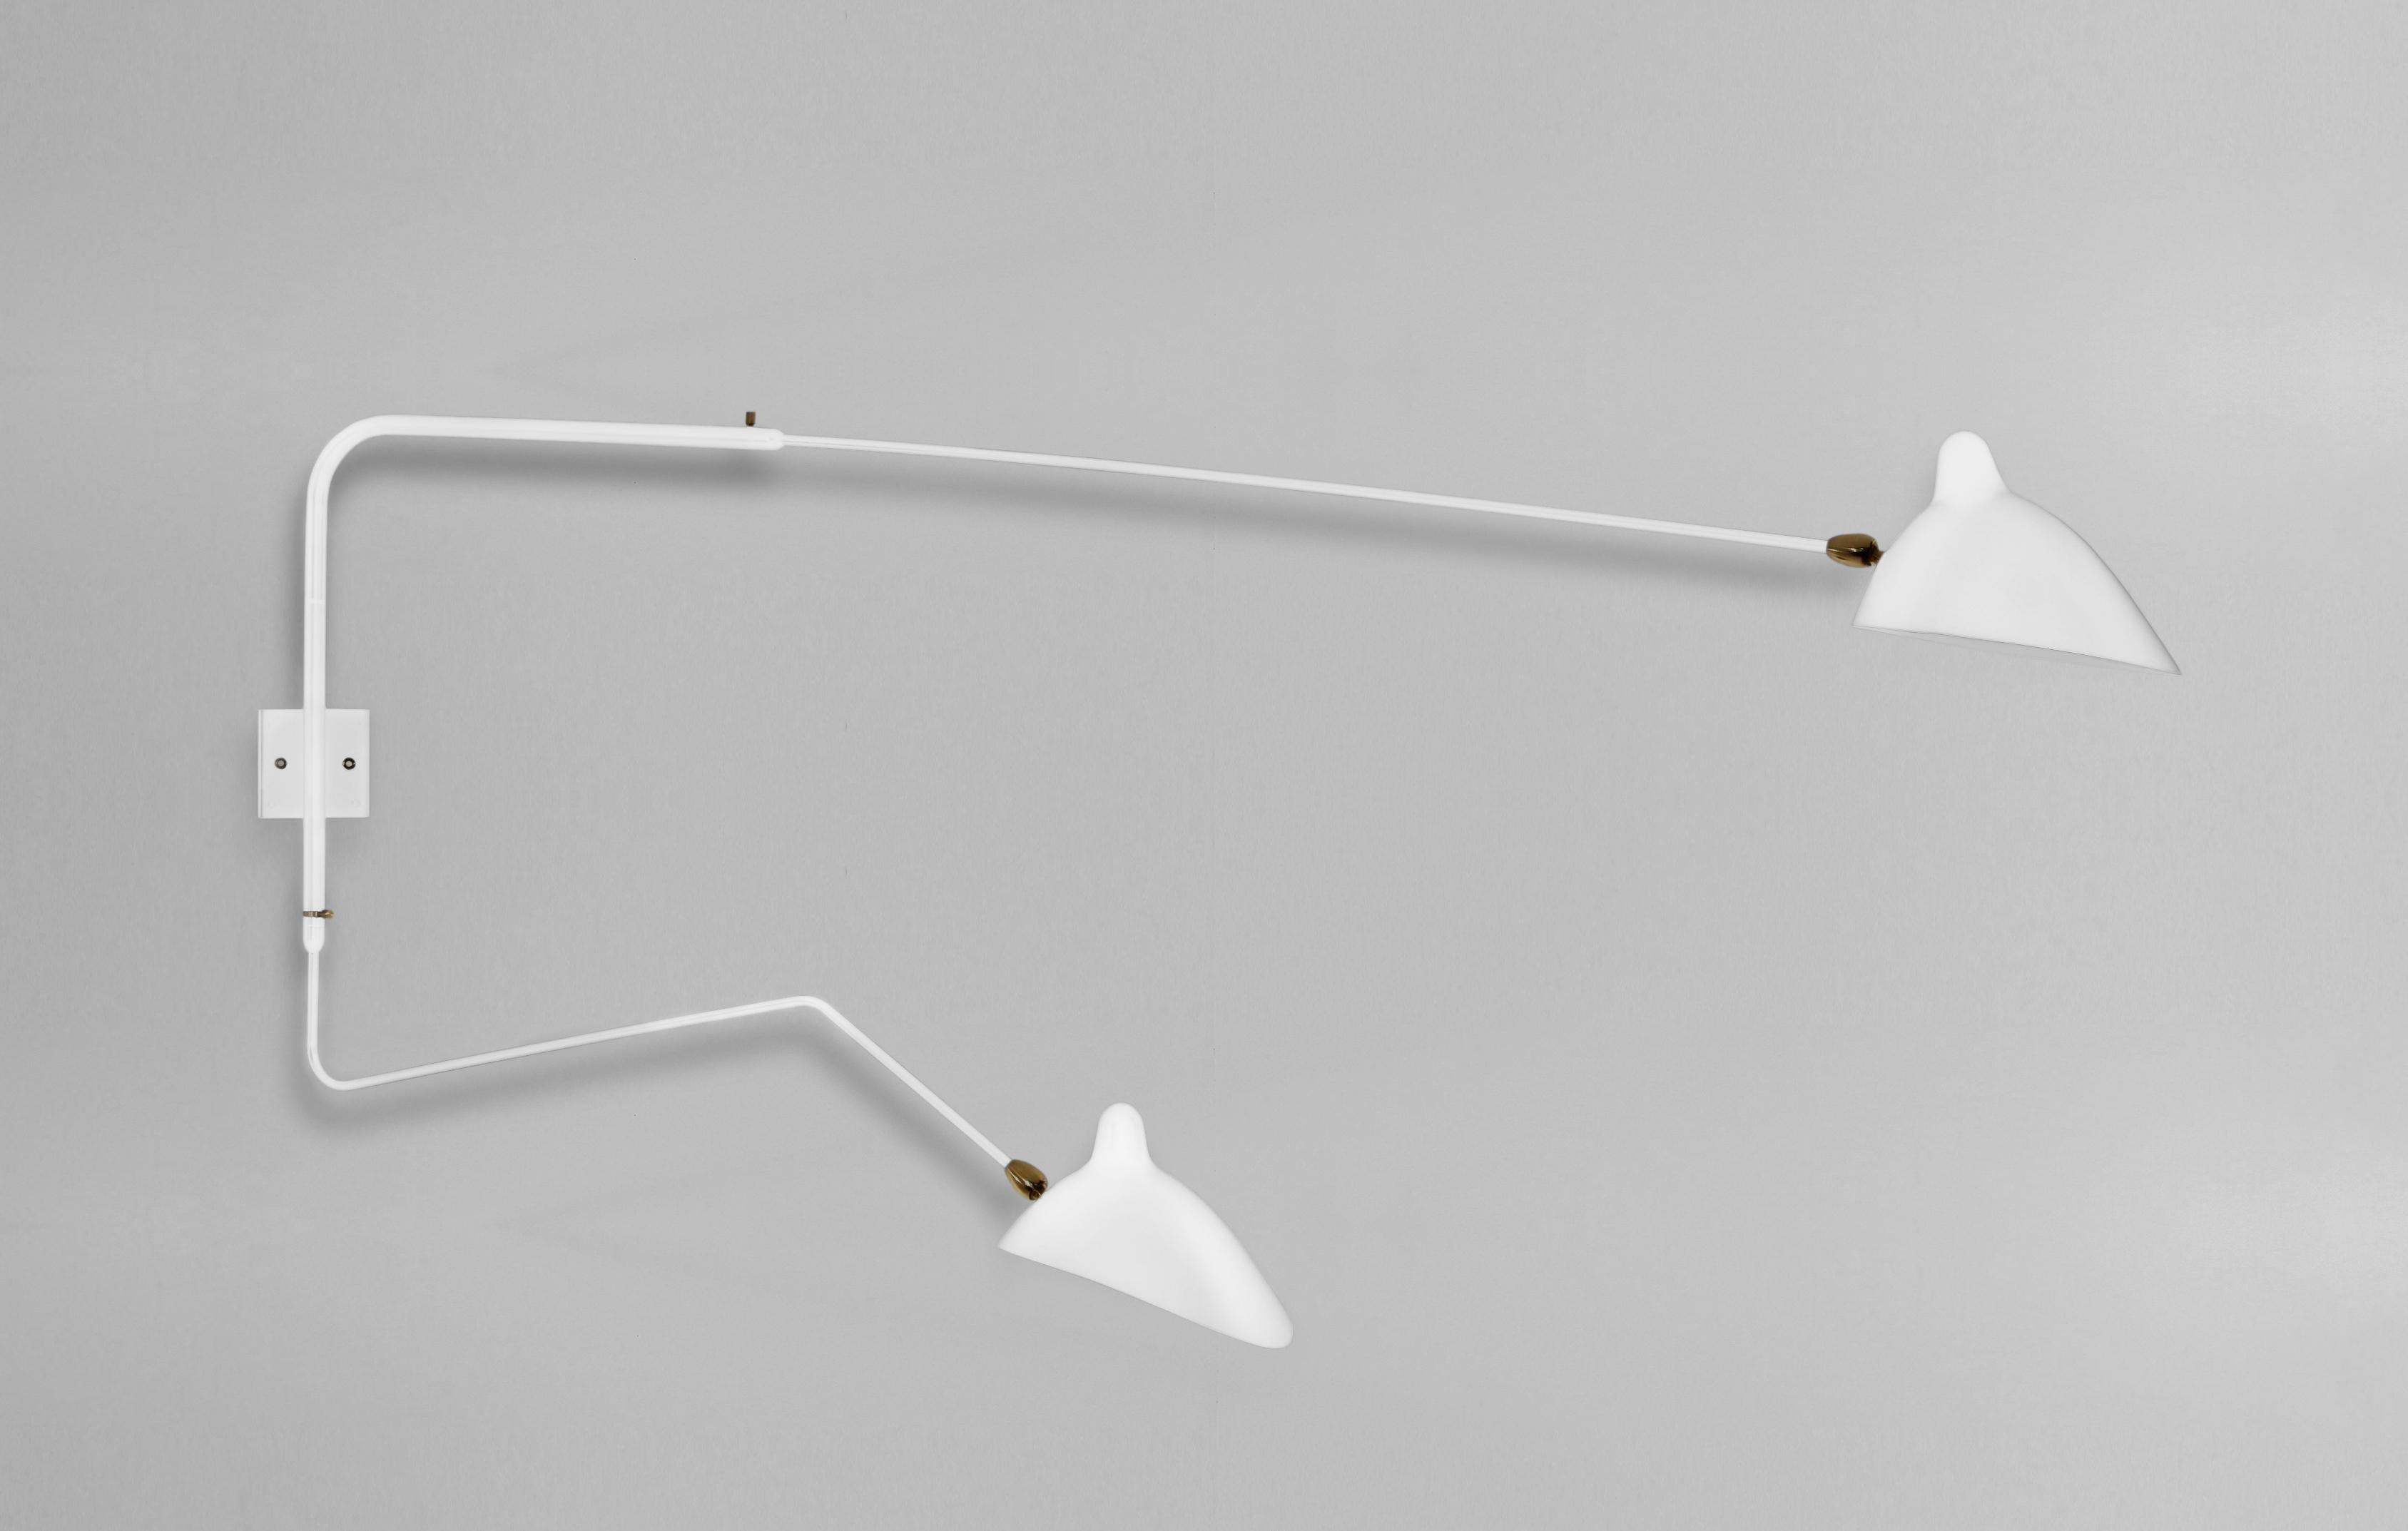 Modèle de lampe murale 'Two Rotating Straight-Curved Arms Wall Lamp' conçu par Serge Mouille en 1954.

Fabriqué par les Editions Serge Mouille en France. La production des lampes, des appliques et des lampadaires est réalisée de manière artisanale